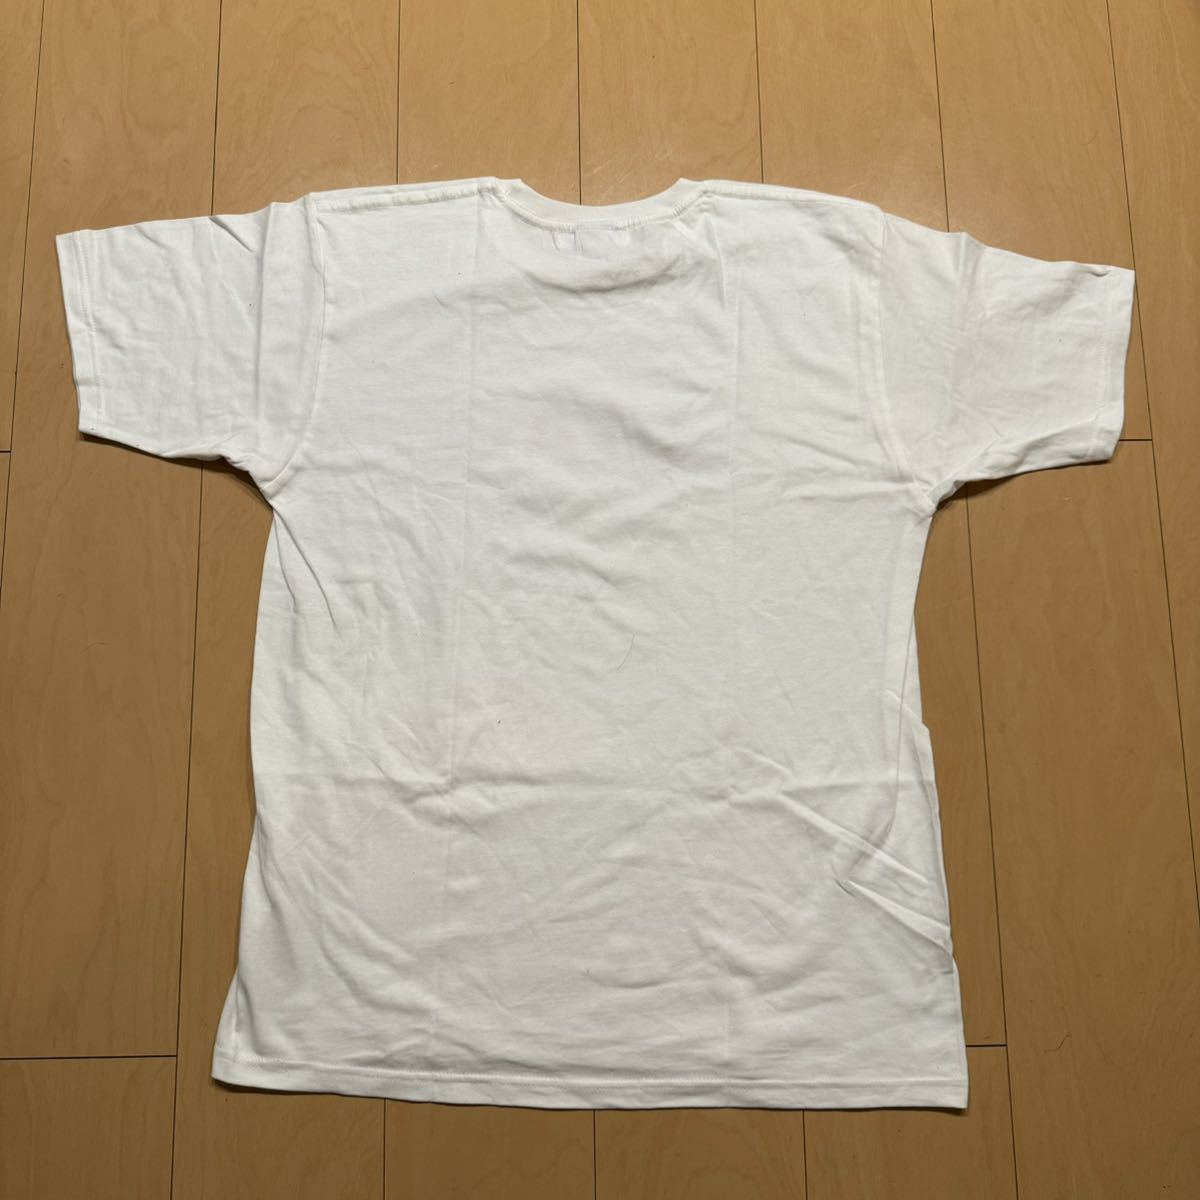 しんご SALE ピクセルロゴ Tシャツ サイズM相当 MADE IN USA 格安!_画像2